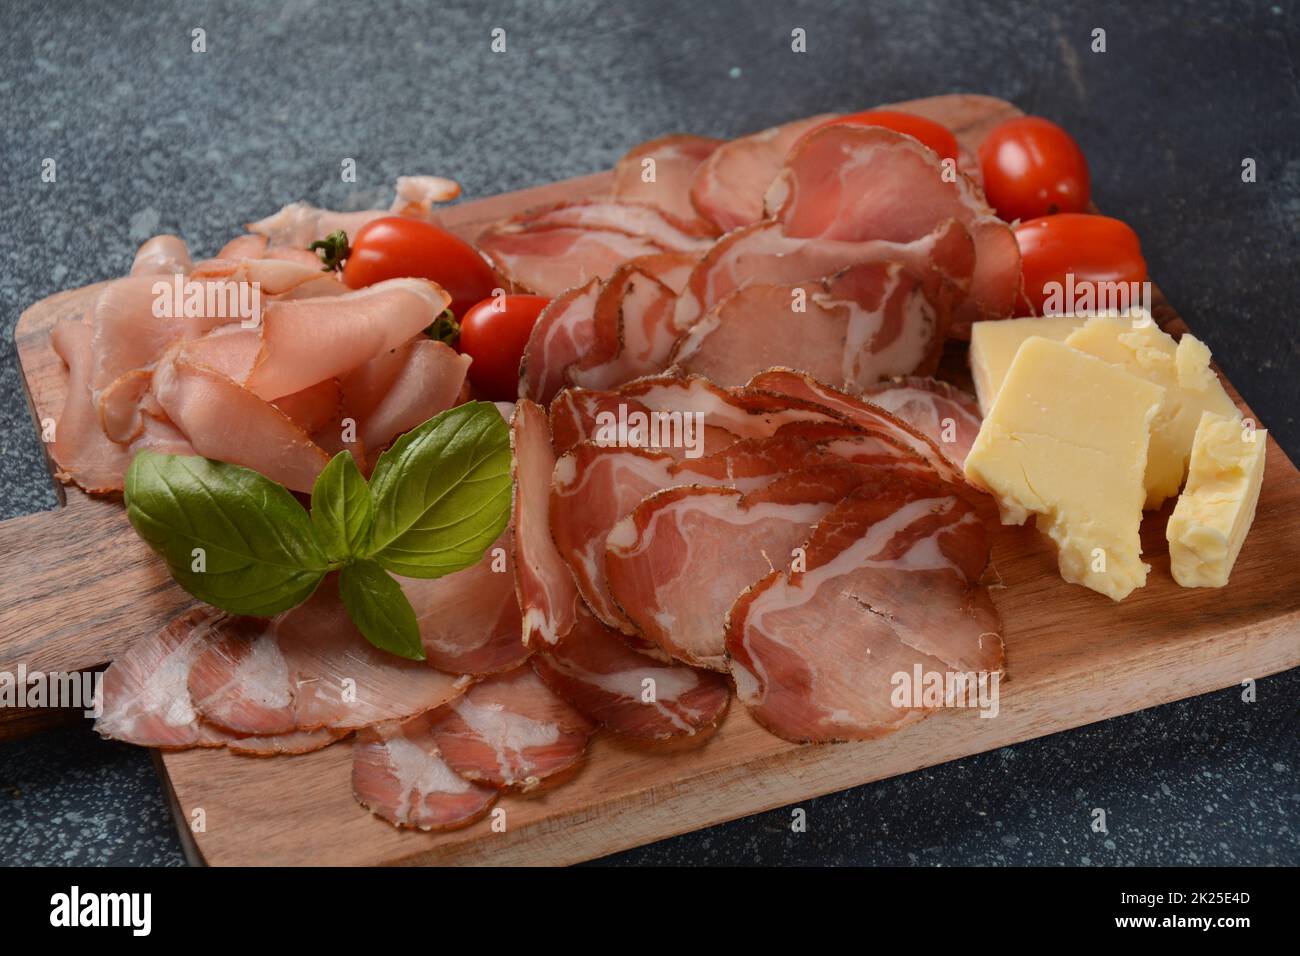 Italienische gehärtete Schweineschulter. Antipasto-Platte coppa stagionata und Kirschtomaten. Traditionelle Wurst in Scheiben mit Gewürzen Stockfoto